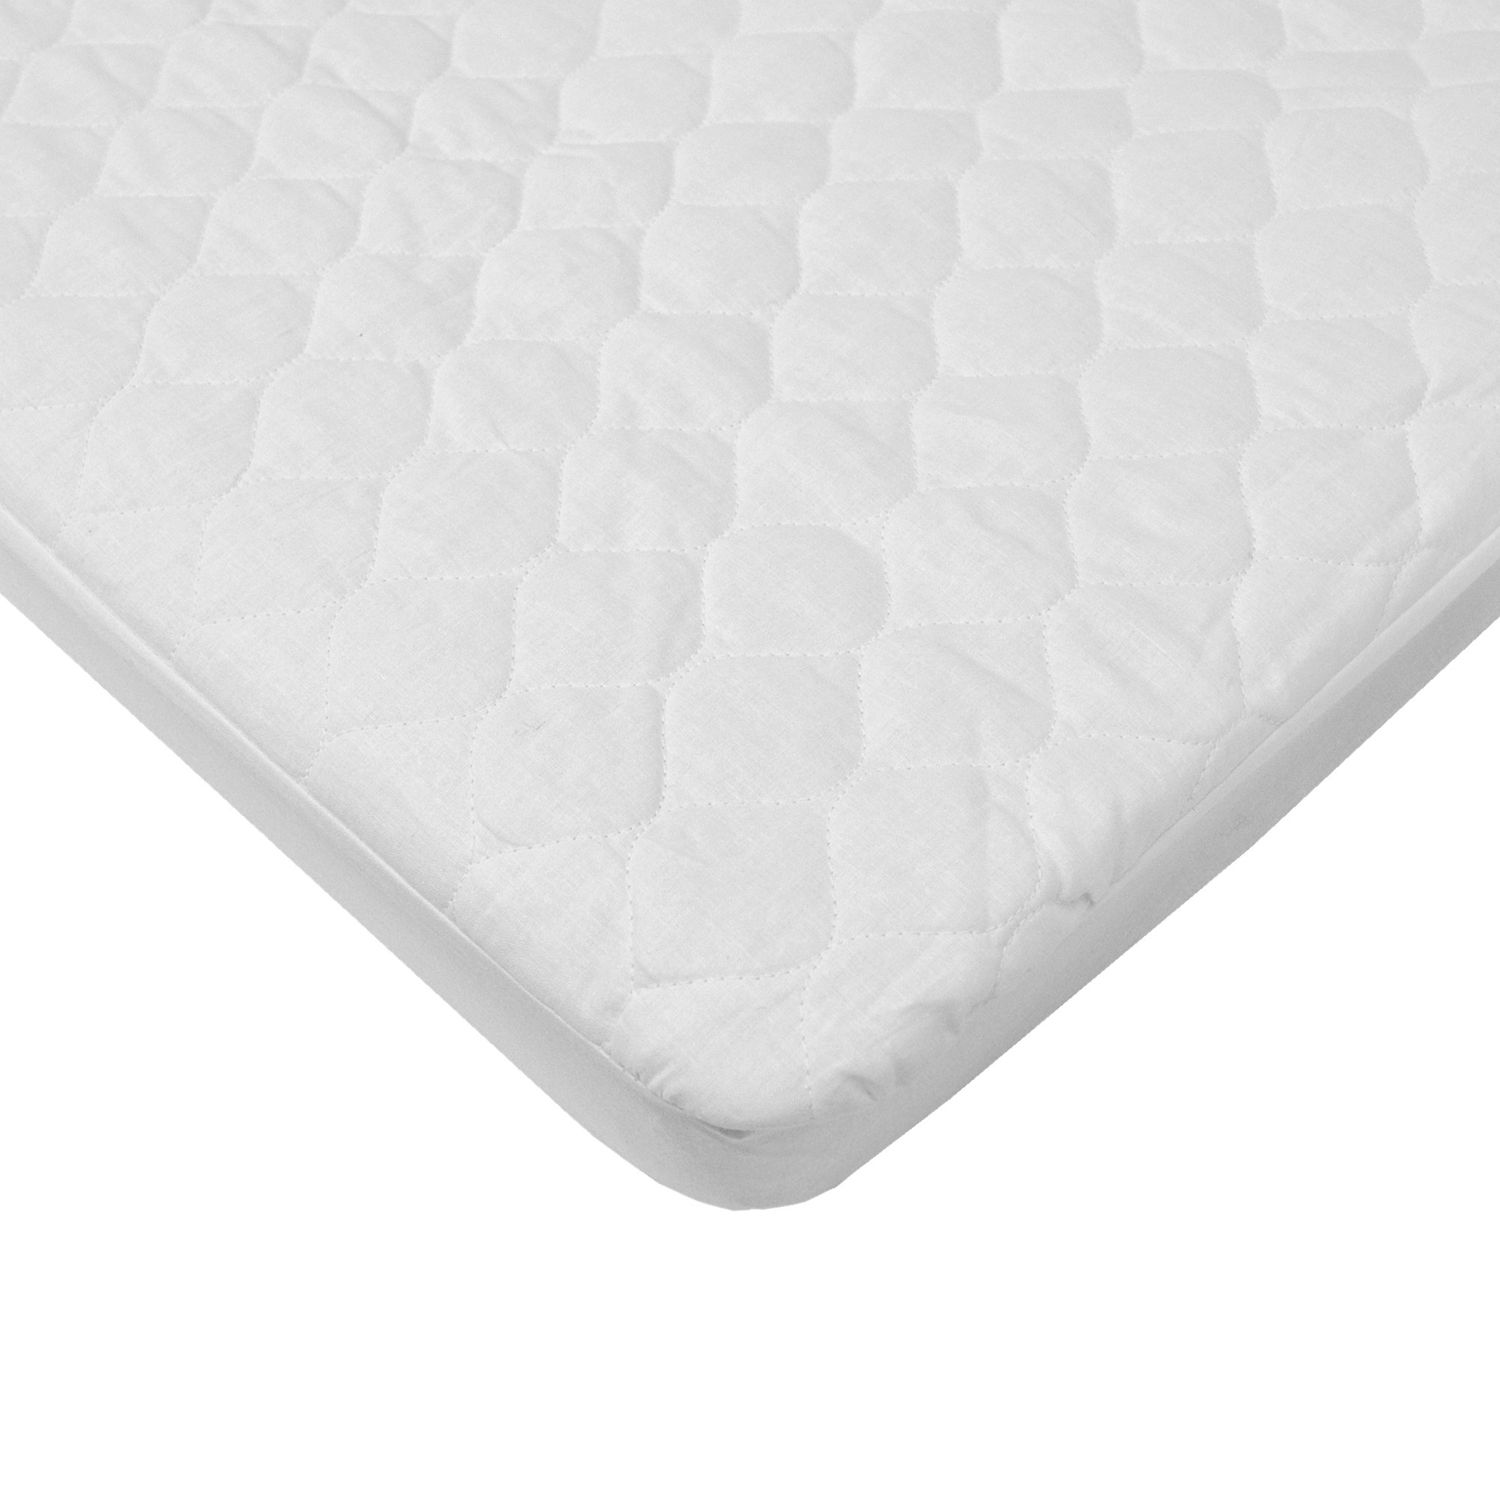 mini crib mattress pad